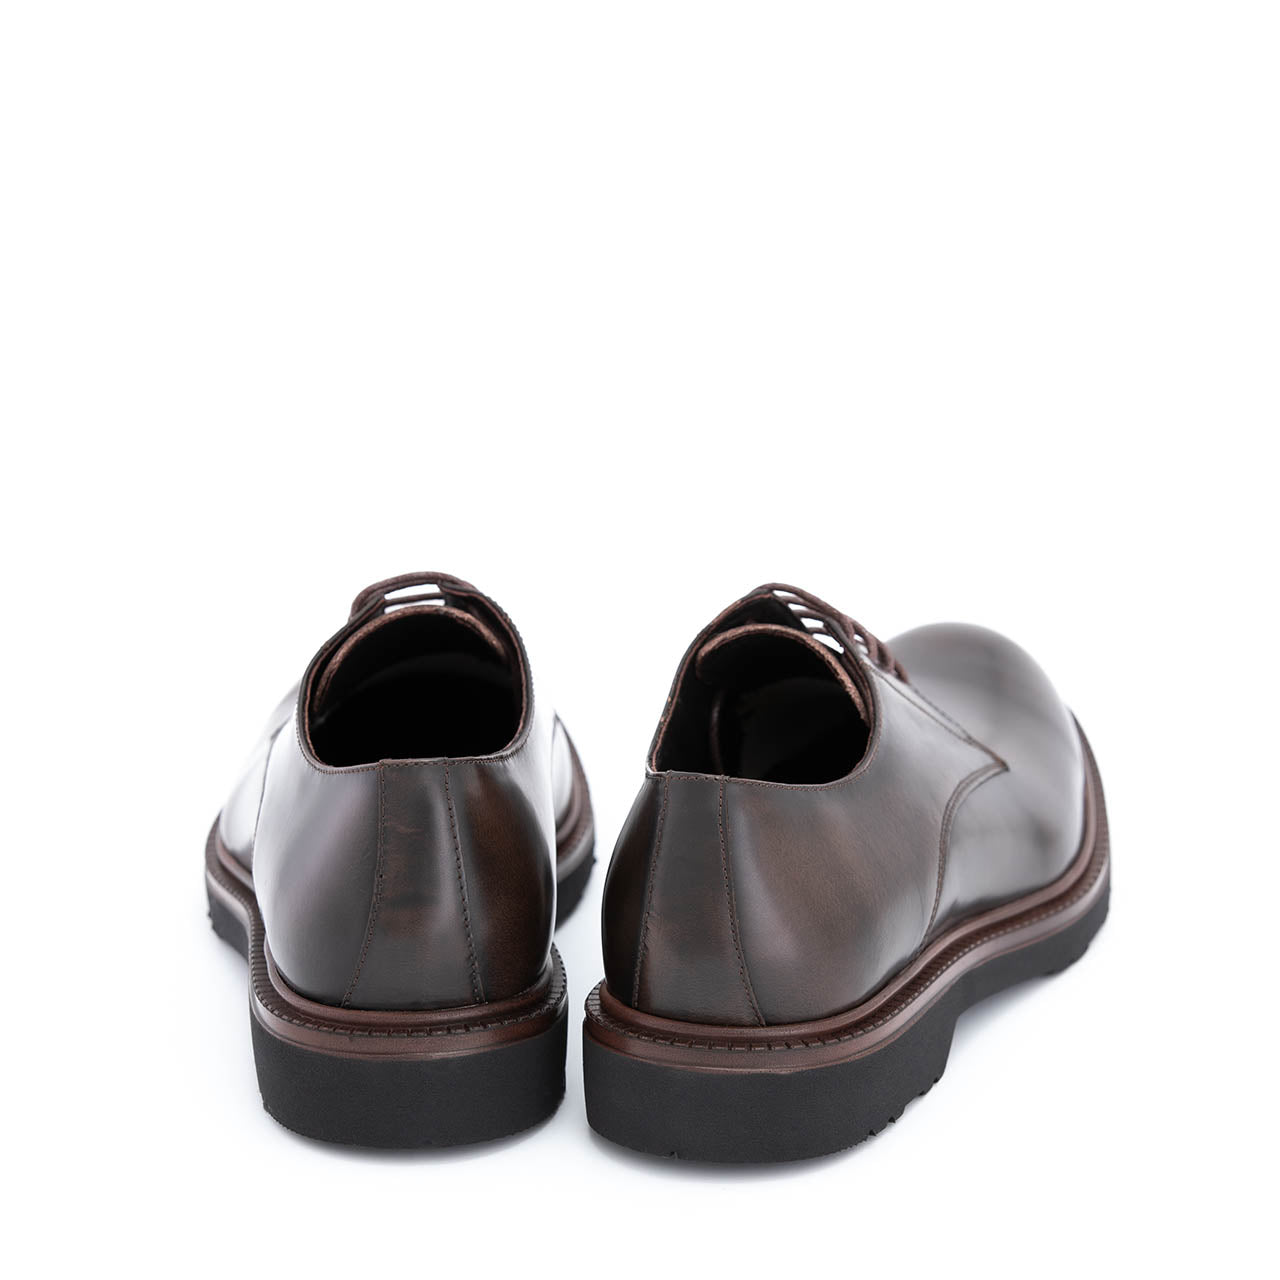 Pantofi eleganti barbati Cillian maro inchis lucios